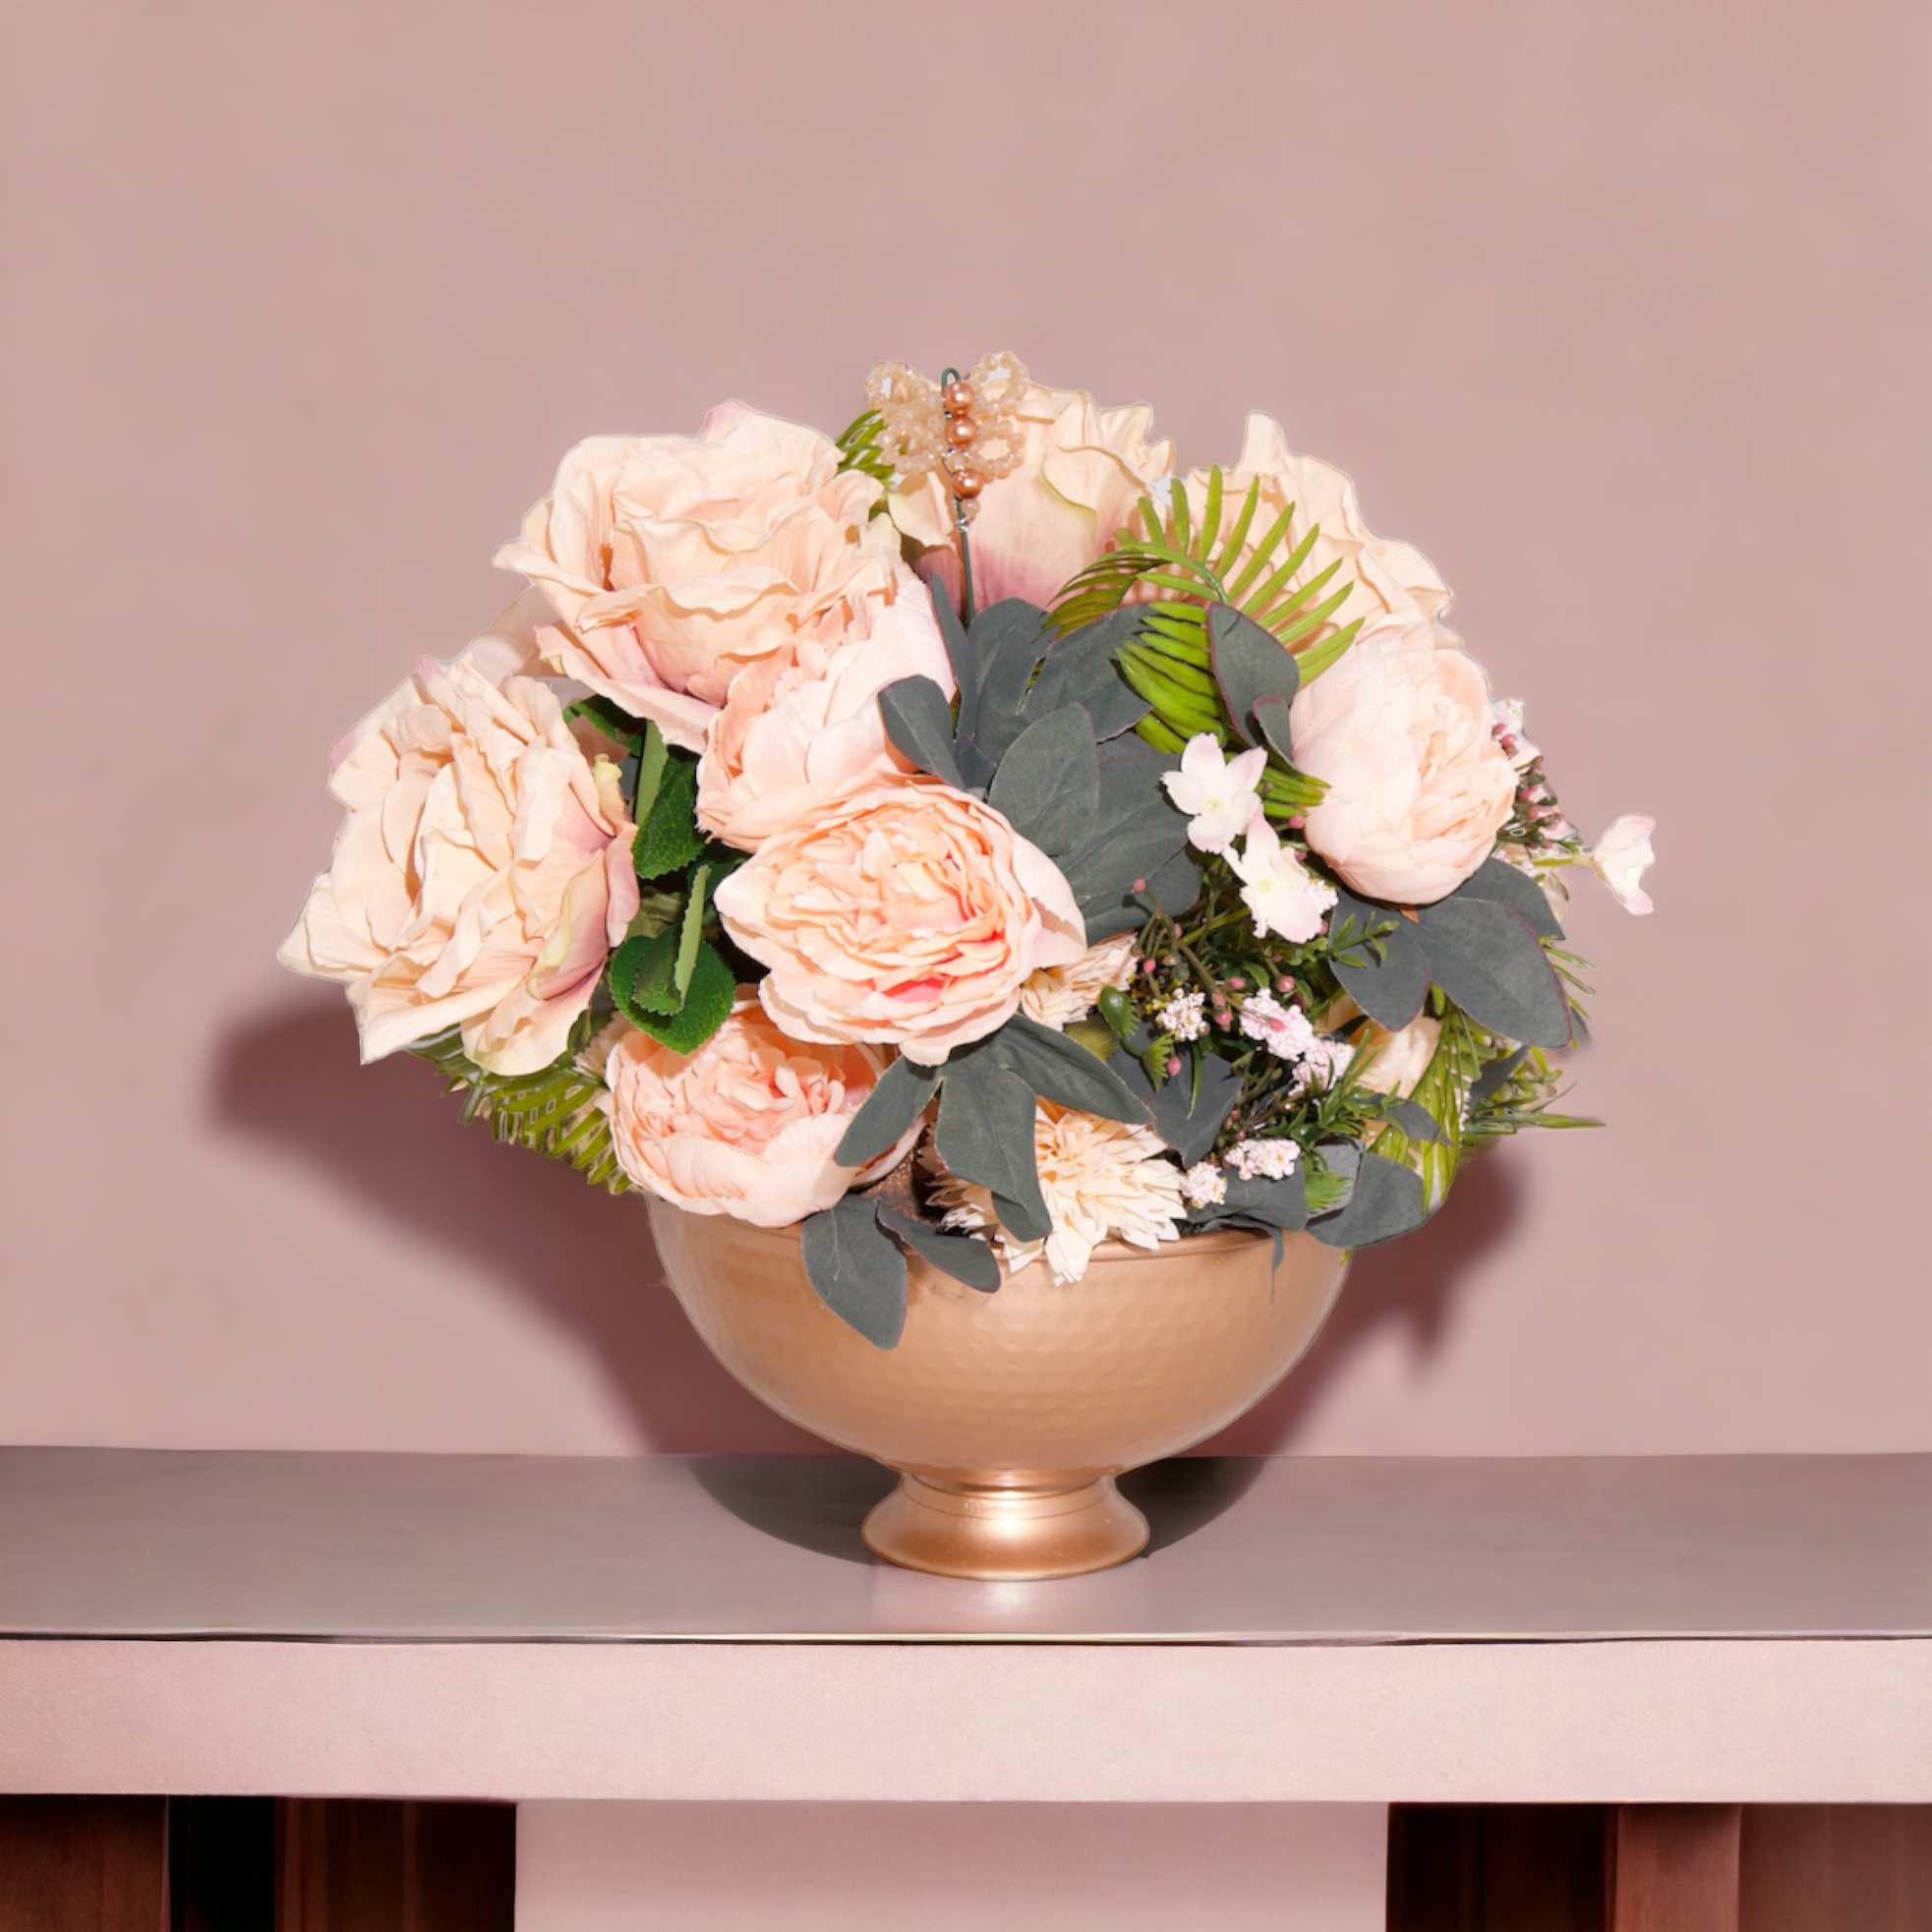 Aranjament din flori artificiale Dinamic | Trandafiri si Bujori real touch | Bijuterie perla aramie, cristale crem metalizat | AF0128